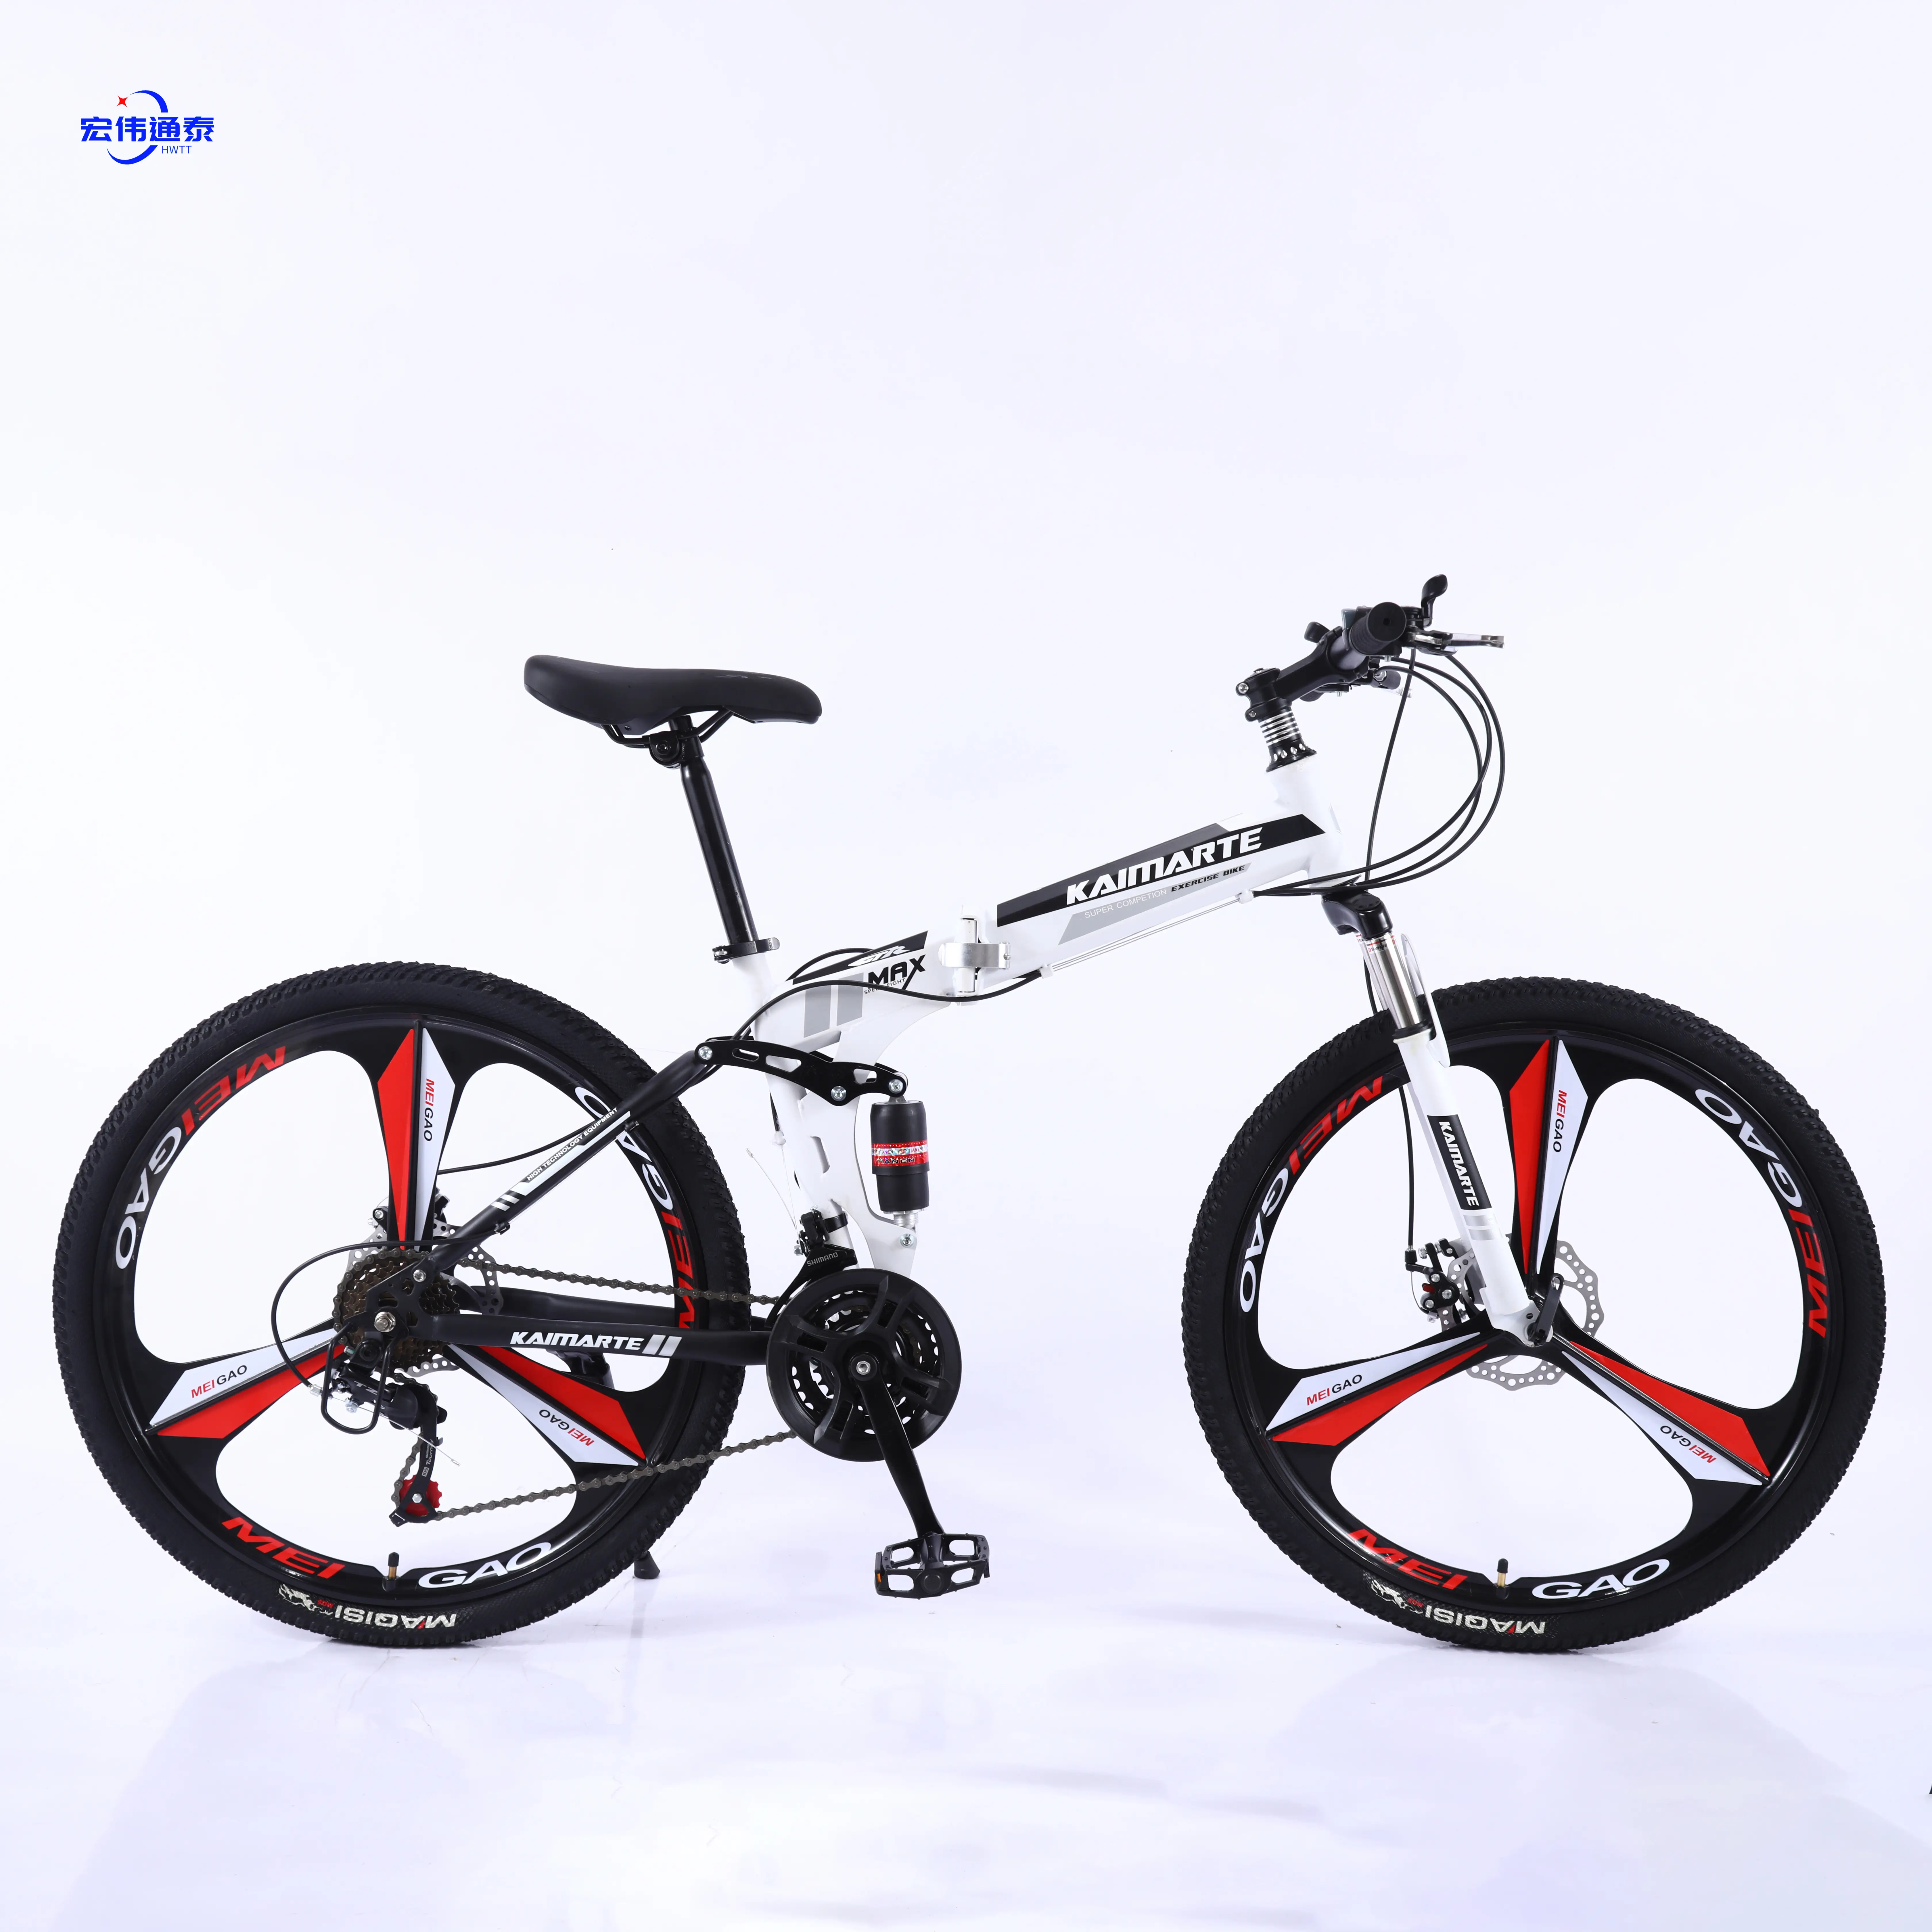 24 26 27.5 29 inç racer bisiklet yol bisikletleri/ucuz katlanır dağ bisikleti ile iyi kalite kolay kat/kolay taşıma alaşım